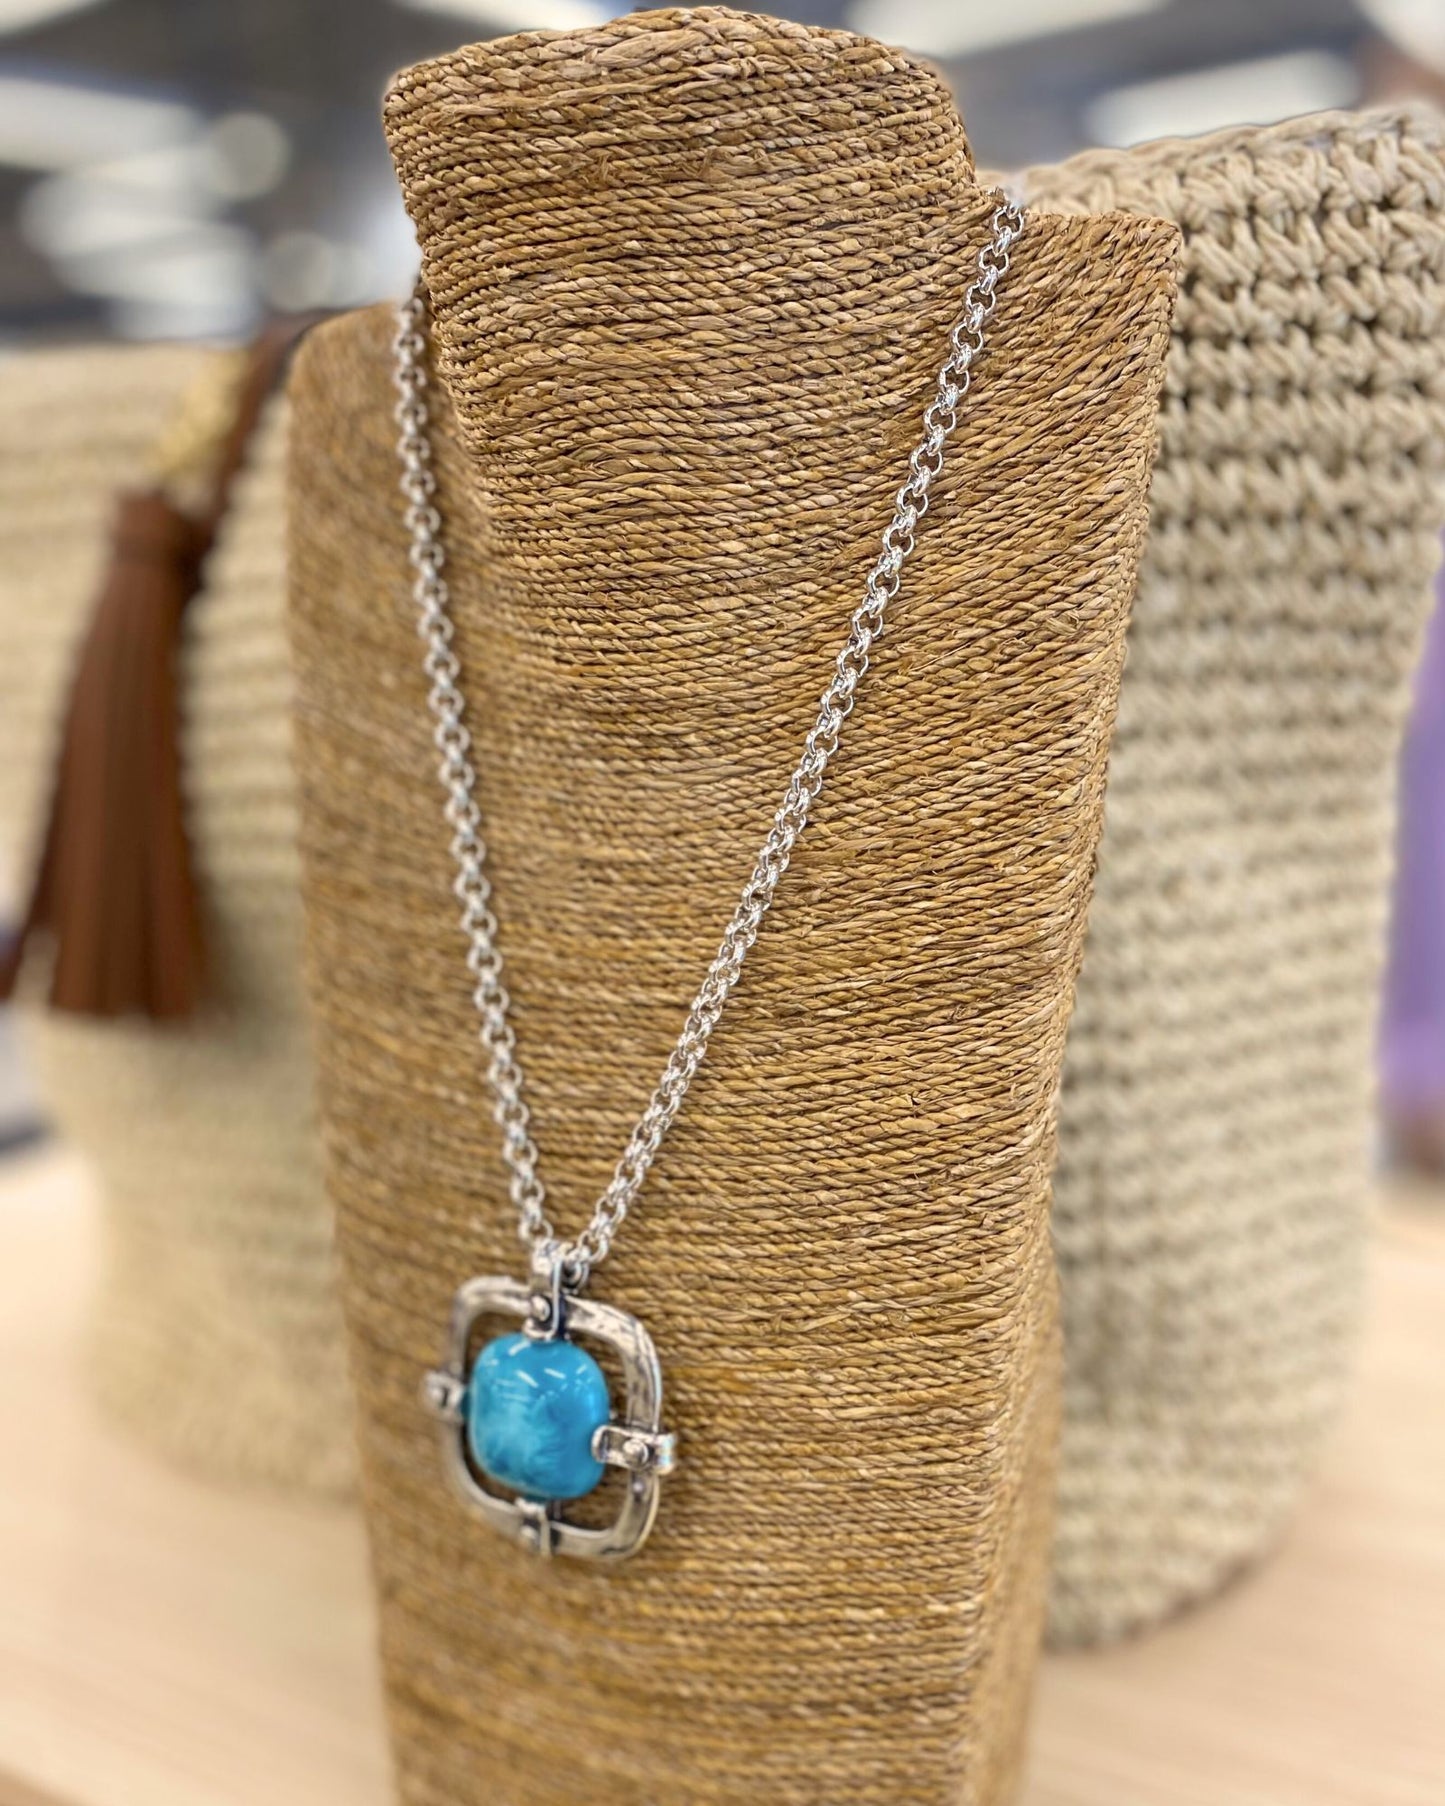 Stylish Turquoise Nyla Pendant Necklace